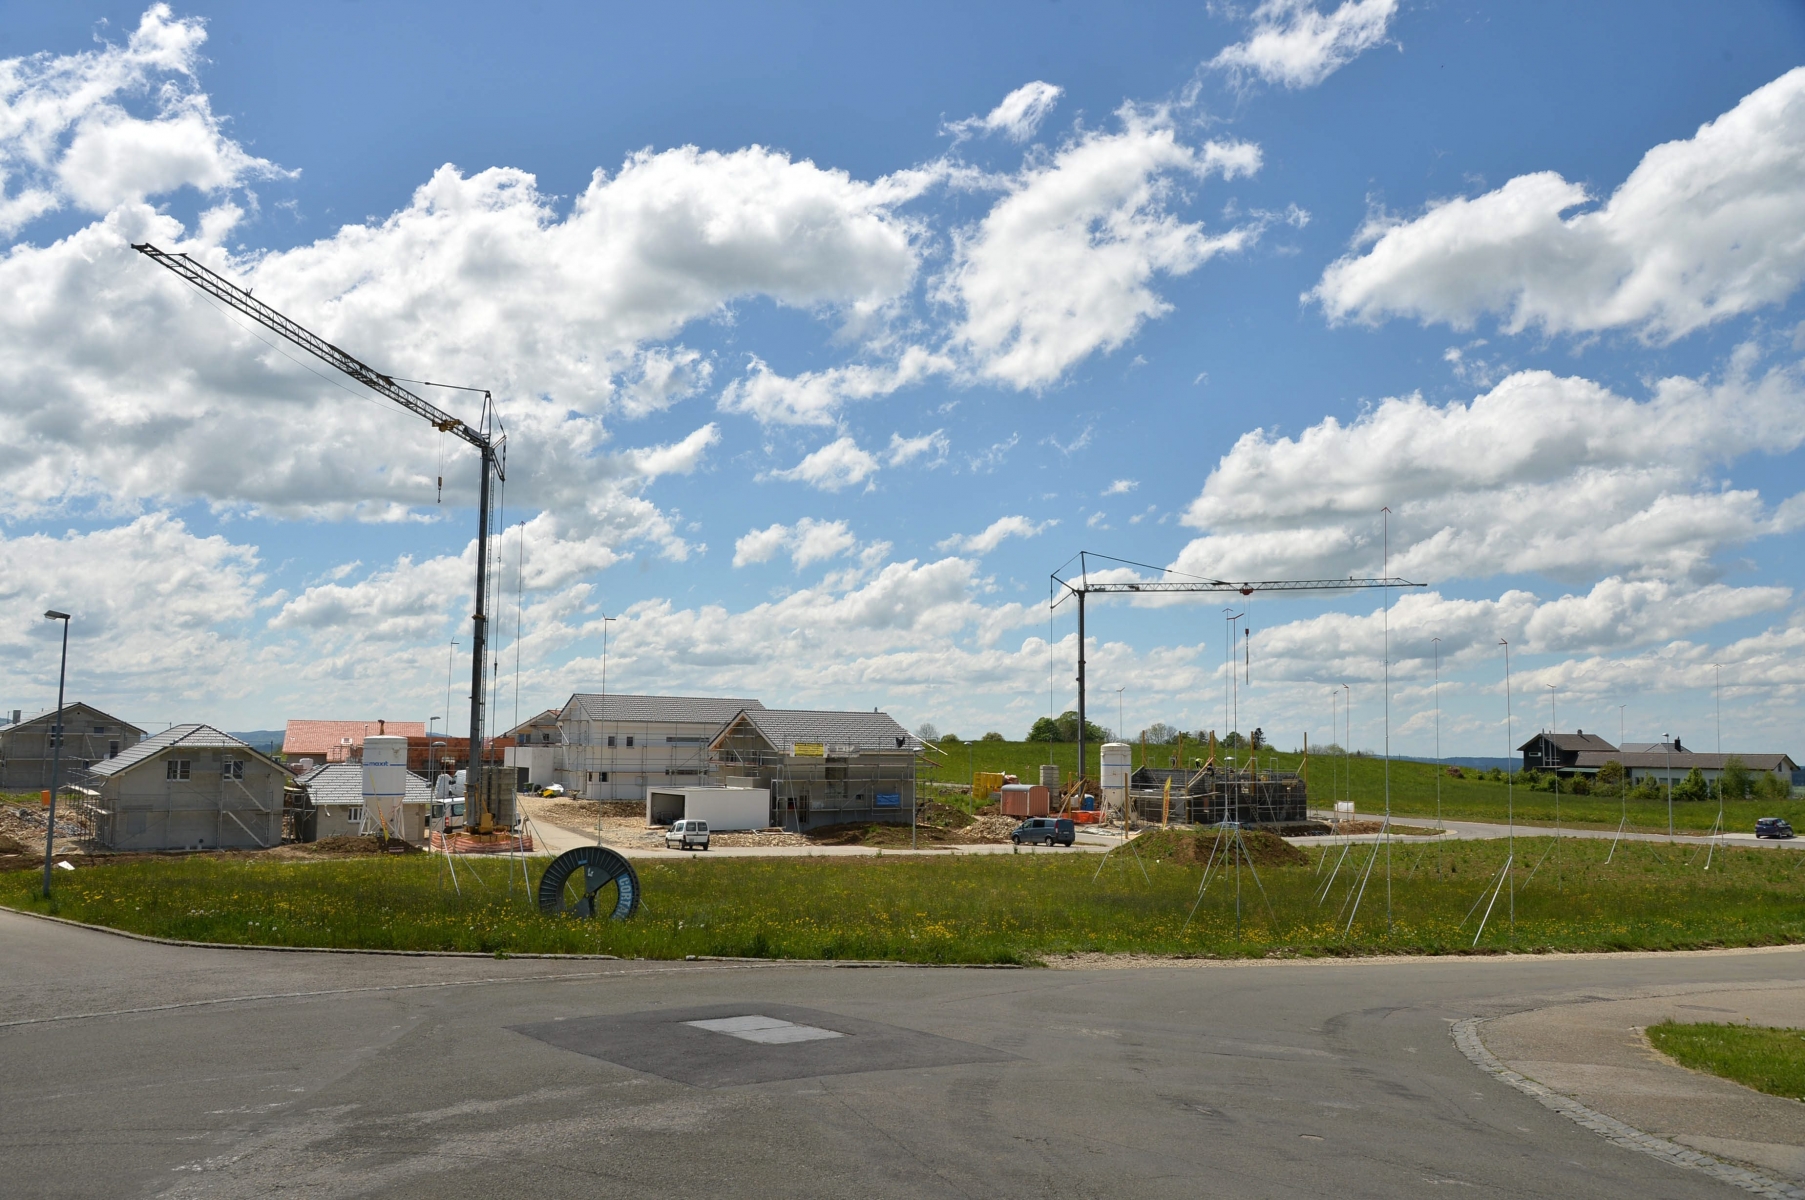 Le village des Bois se developpe tant sur le plan industriel que sur le plan immobilier ici construction de locatif et de villas
Les Bois 23 mai 2014.